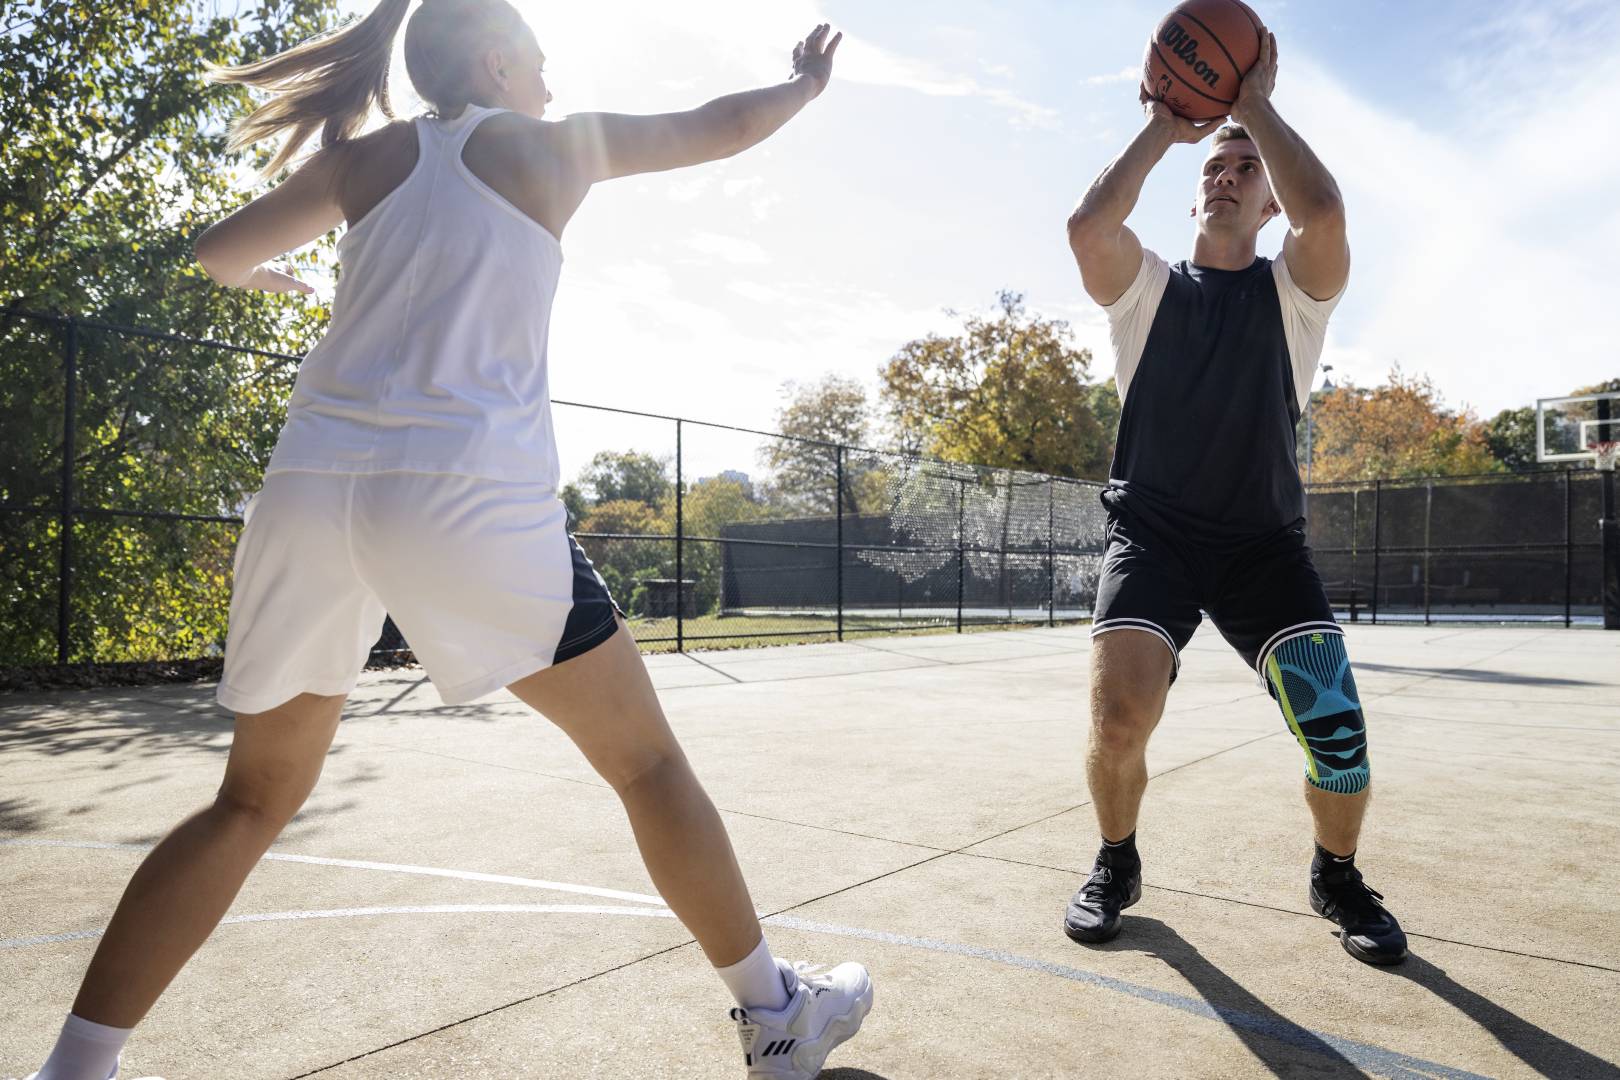 Basketballer mit Kniebandage setzt beim Streetball zum Wurf an	 während seine Gegnerin ihn zu blocken versucht